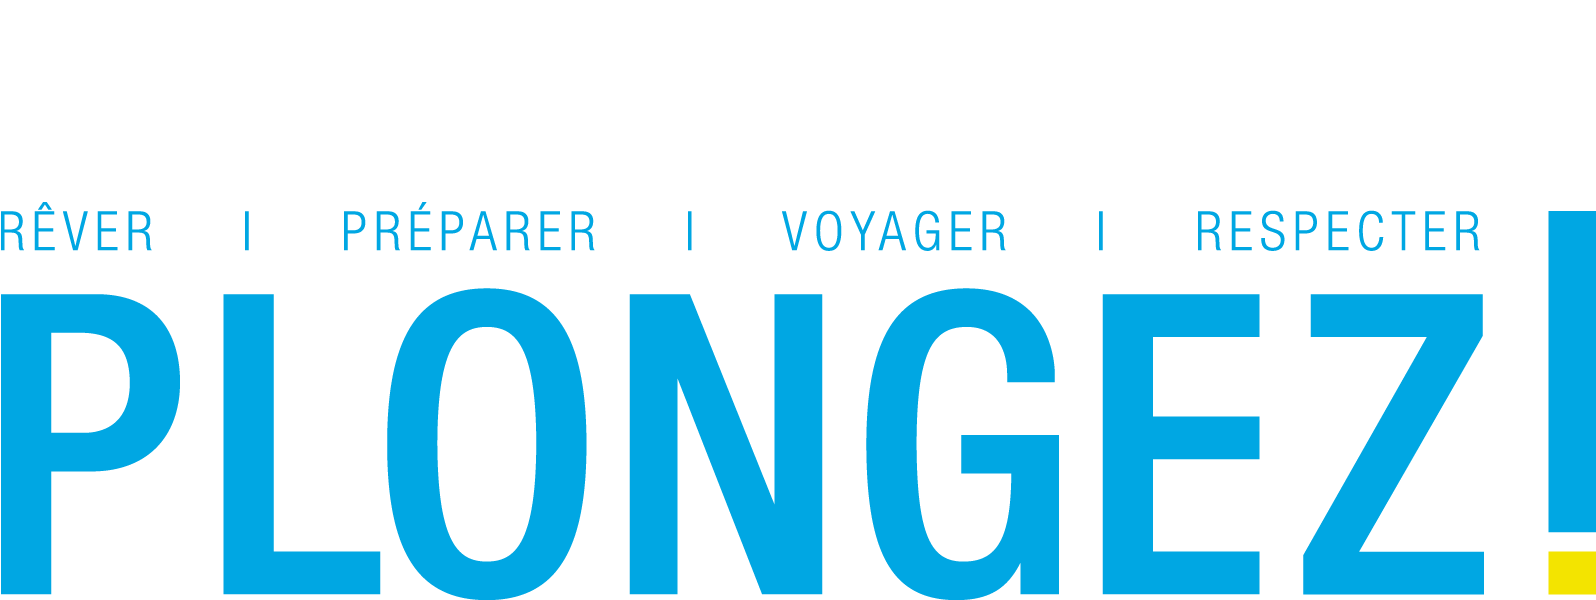 plongez-magazine-france-logo-photo-sous-marine